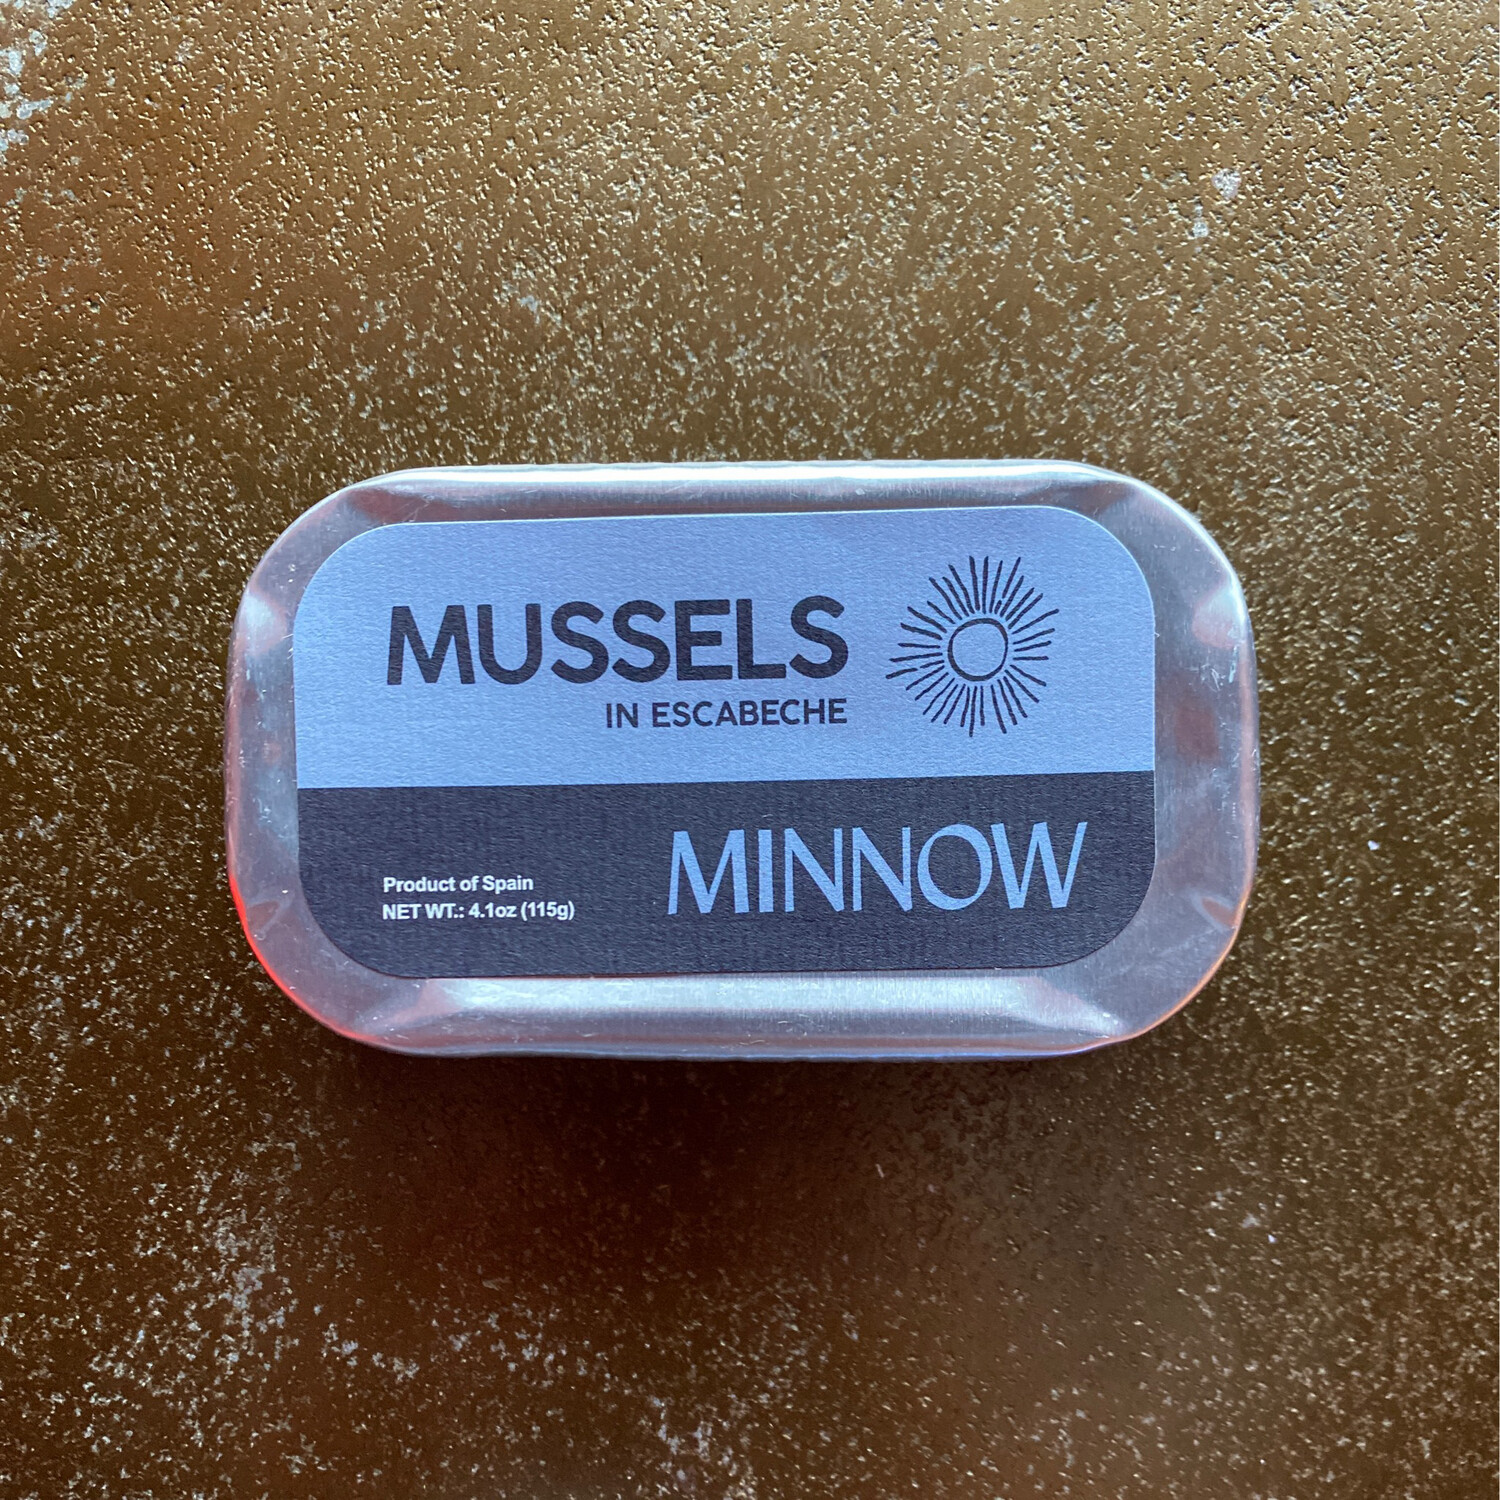 Minnow Mussels